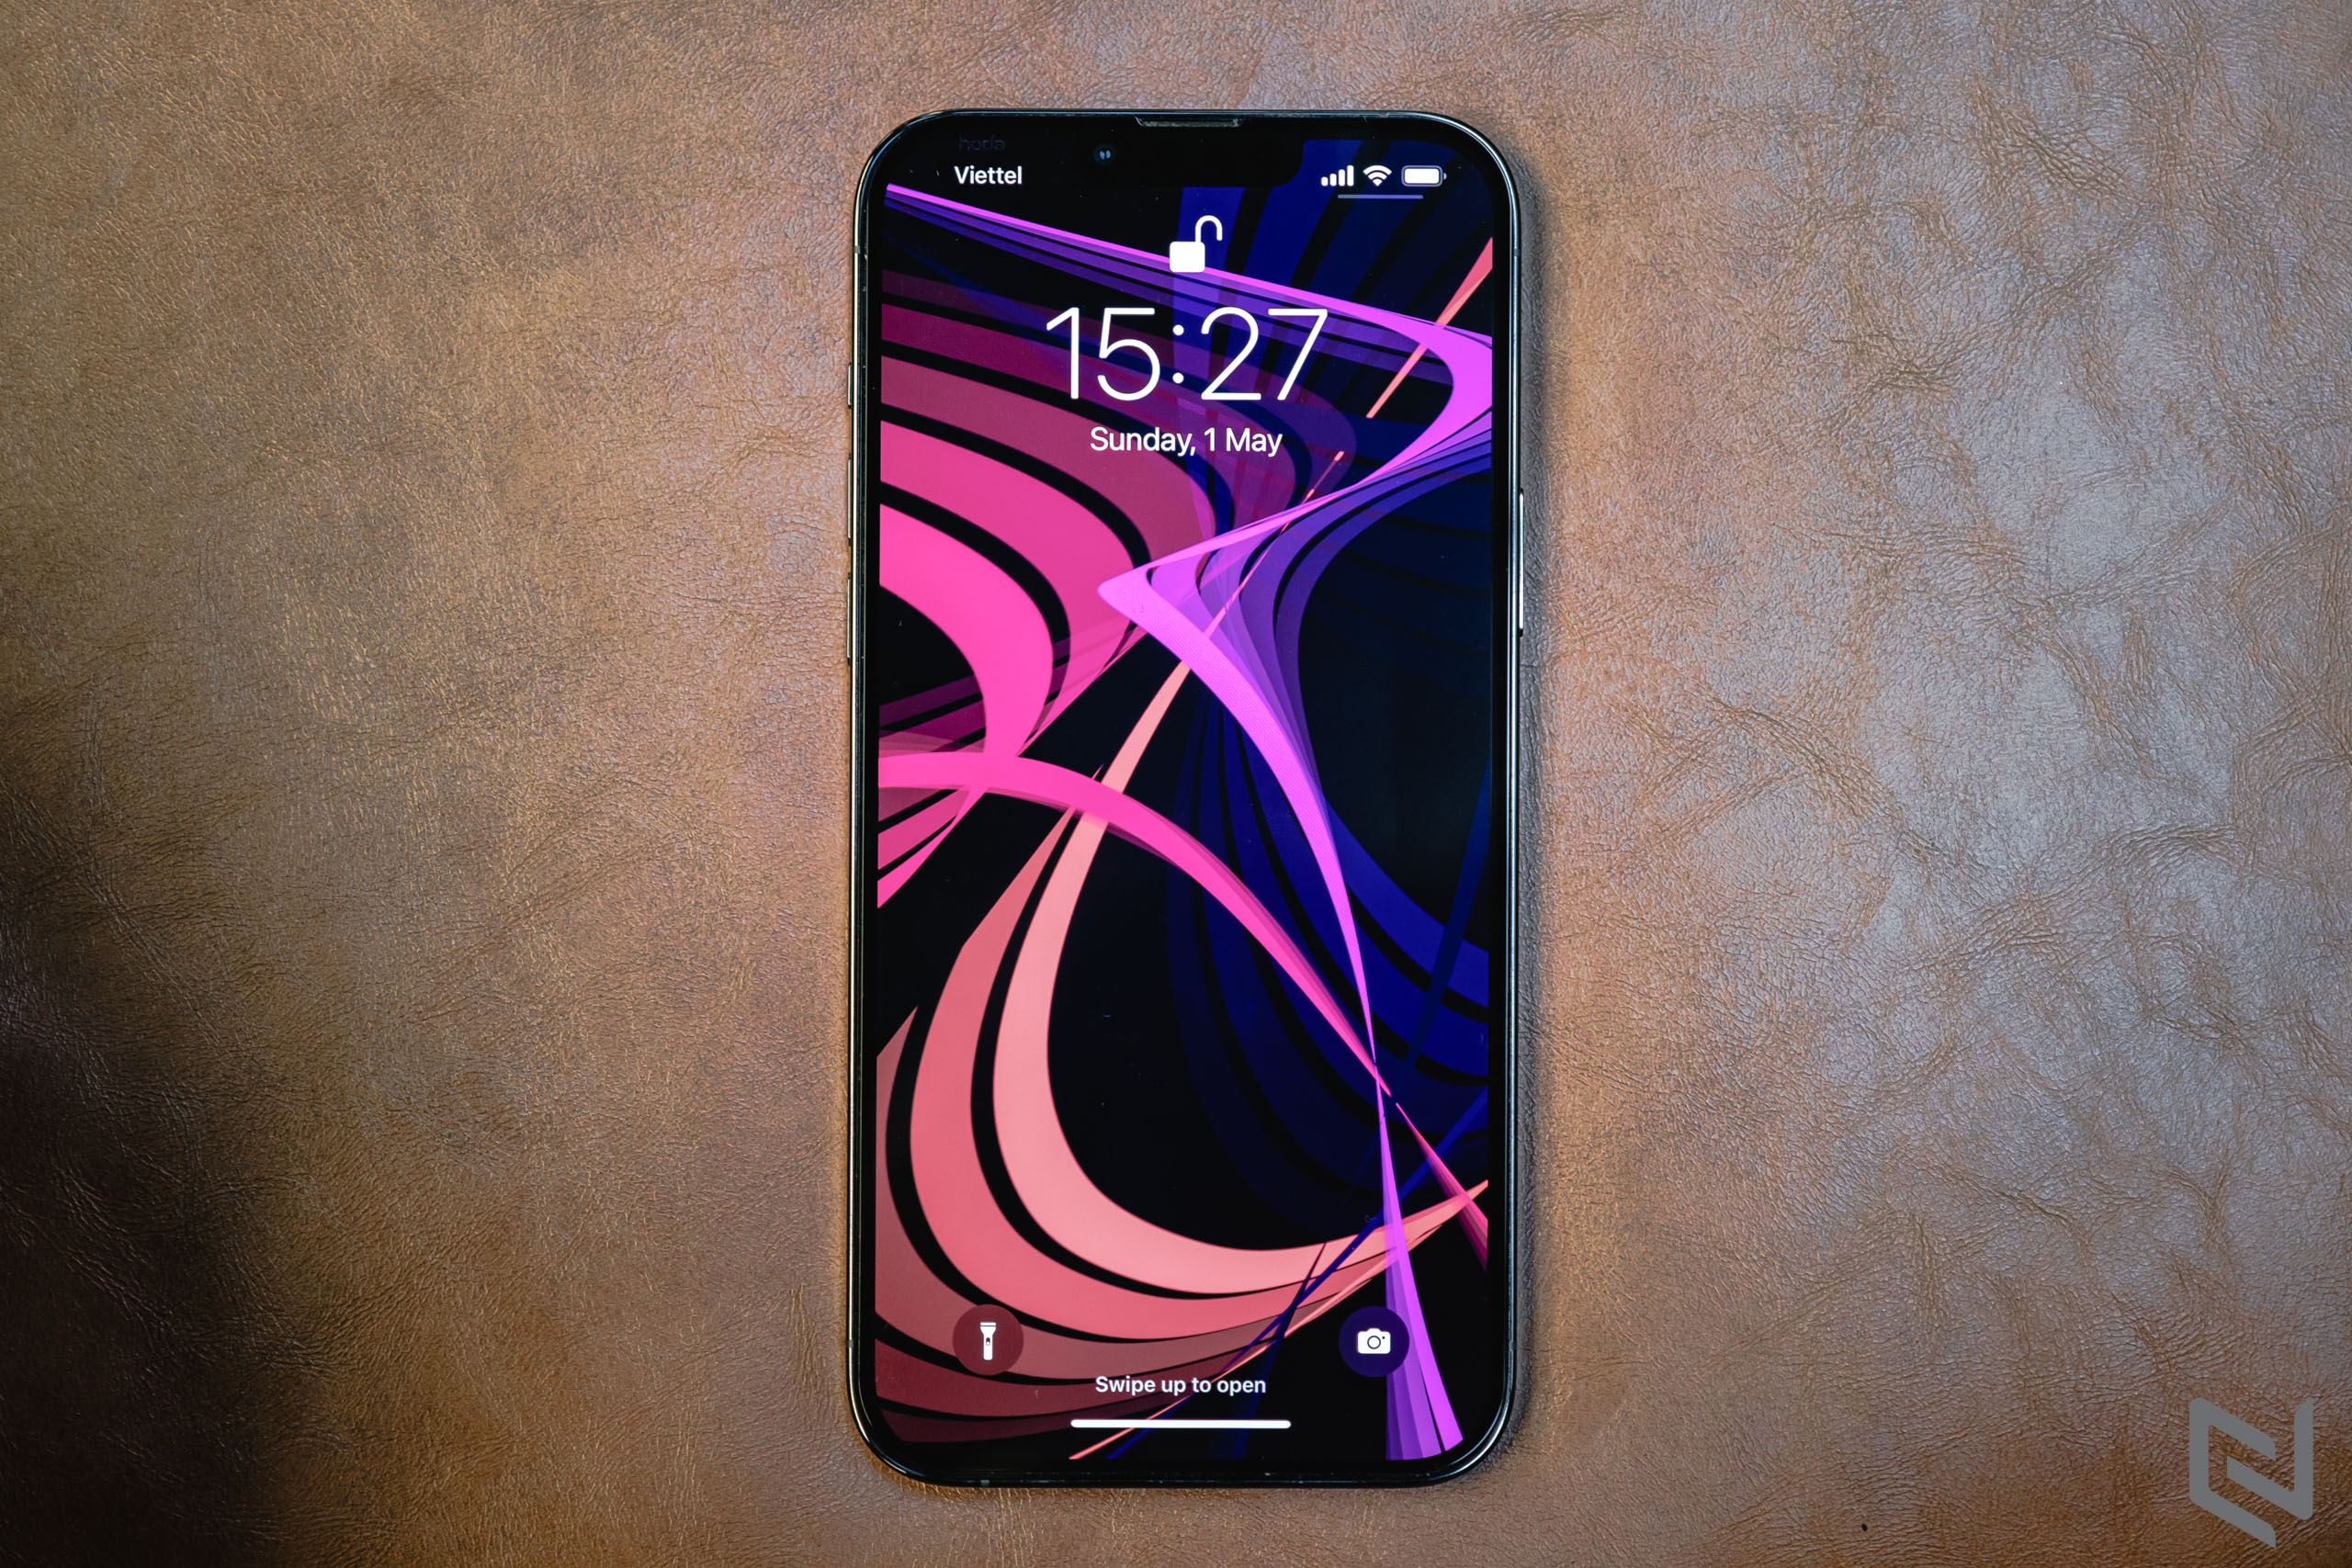 Màn hình OLED iPhone 14: Màn hình OLED iPhone 14 sẽ mang đến cho bạn những trải nghiệm tuyệt vời với độ sâu màu sắc đa dạng, độ phân giải cực cao và thông số kỹ thuật vượt trội. Điều này đồng nghĩa với việc bạn sẽ được tận hưởng mức độ tương phản và độ tương phản đến từng chi tiết trên màn hình điện thoại của mình.